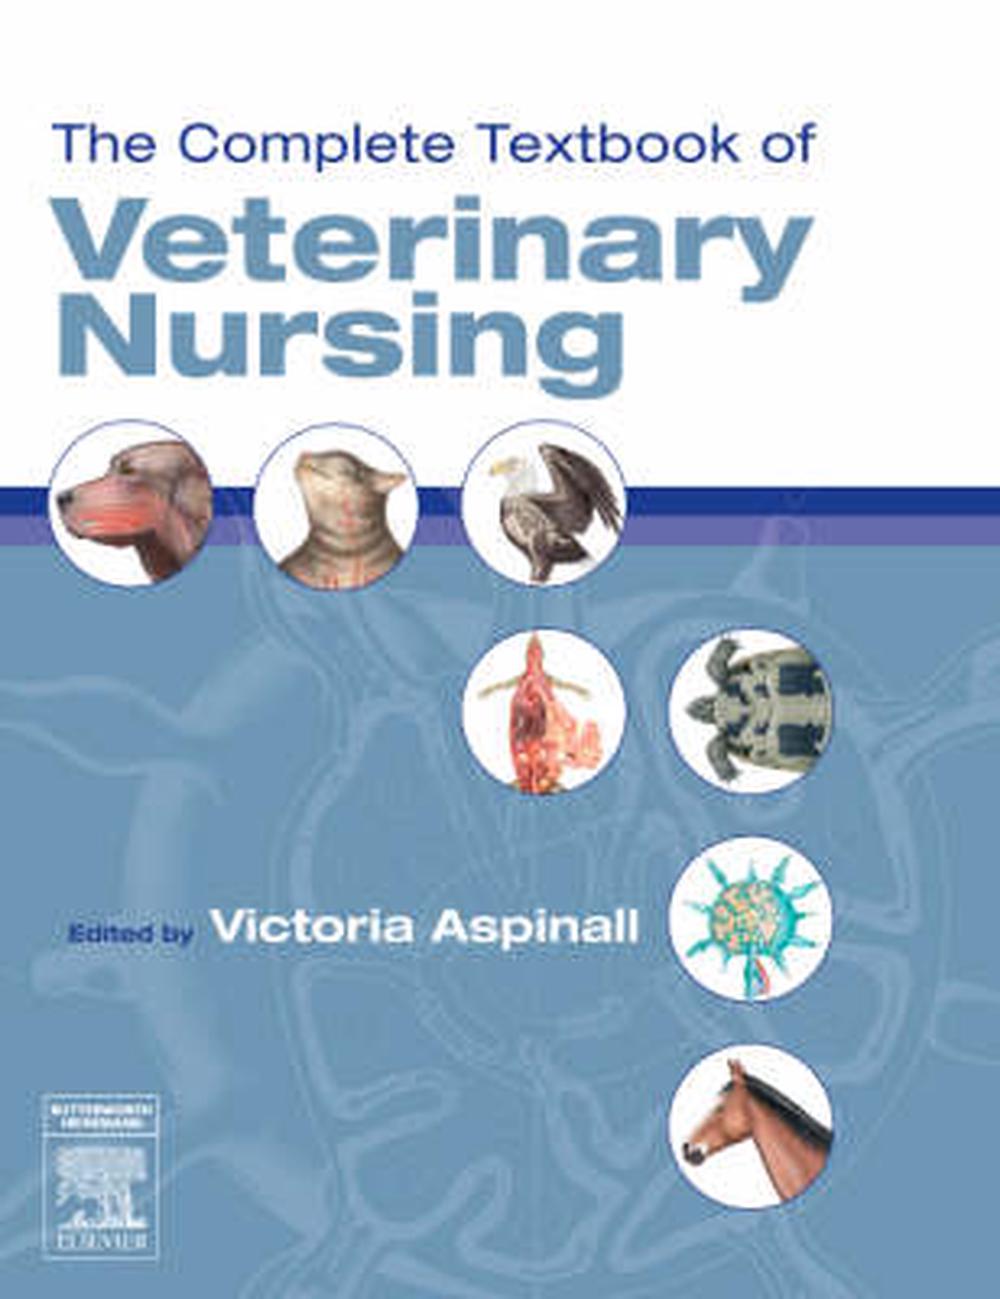 veterinary nursing dissertation topics